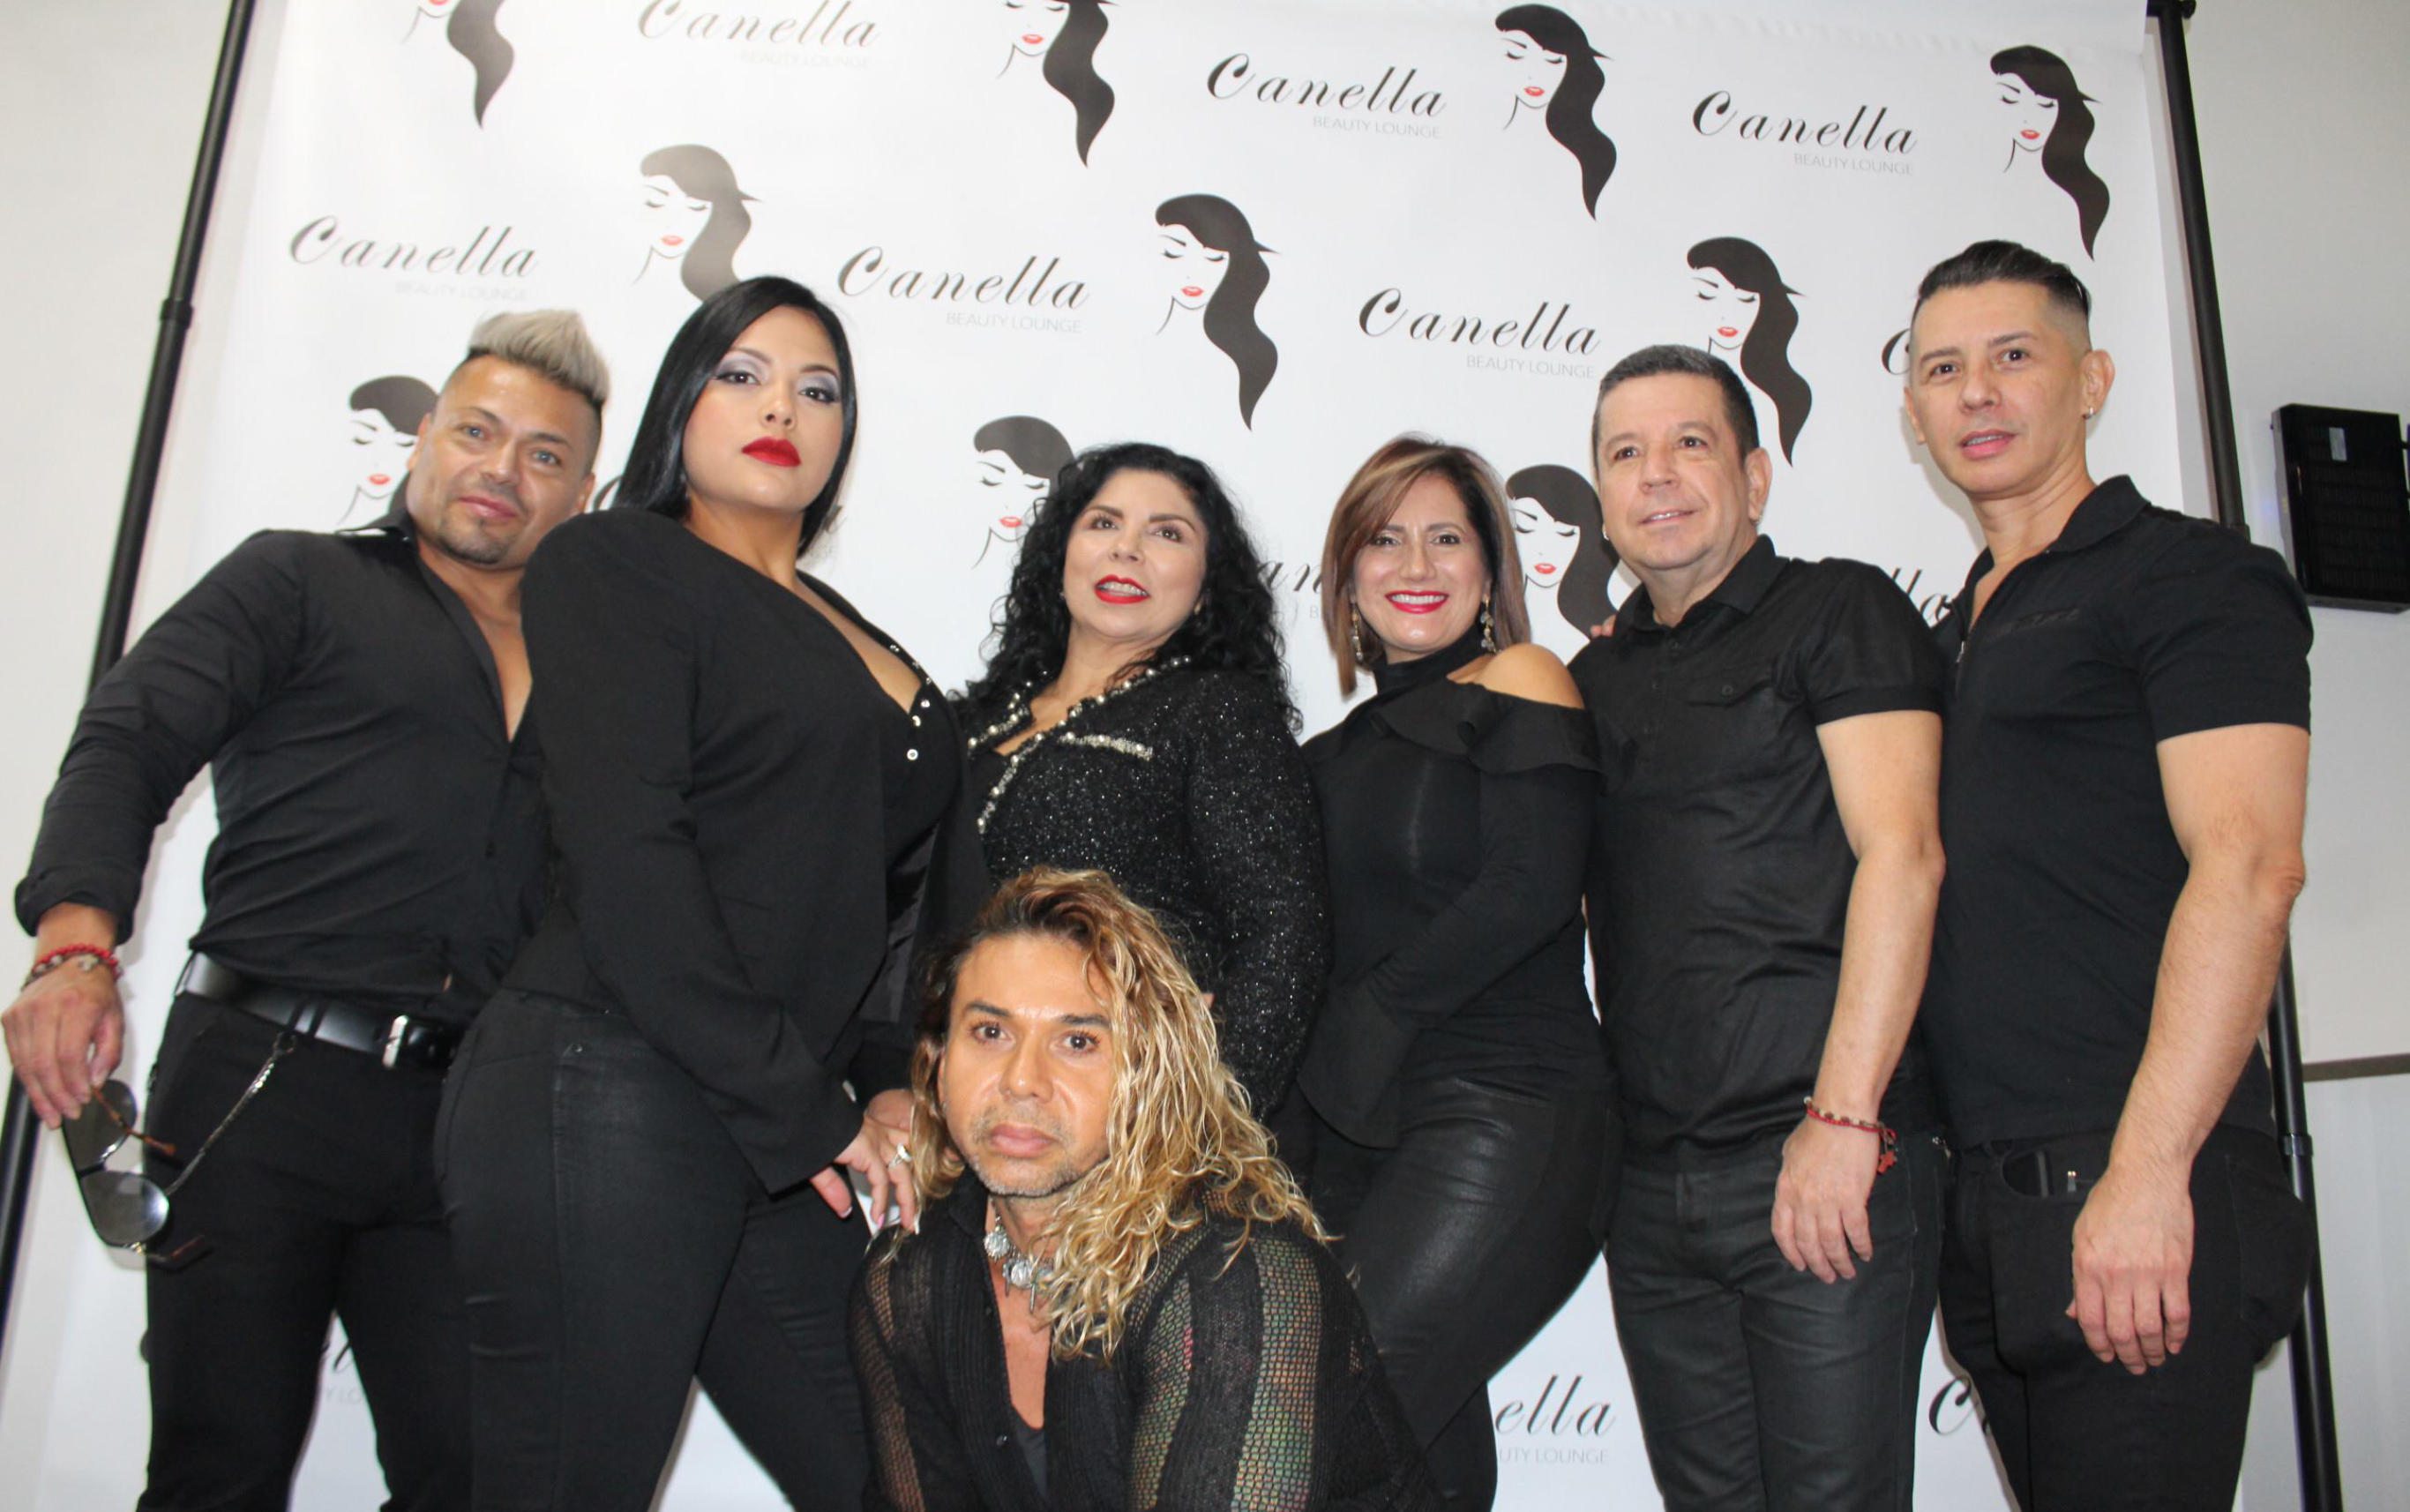 Canella Beauty Lounge Photo